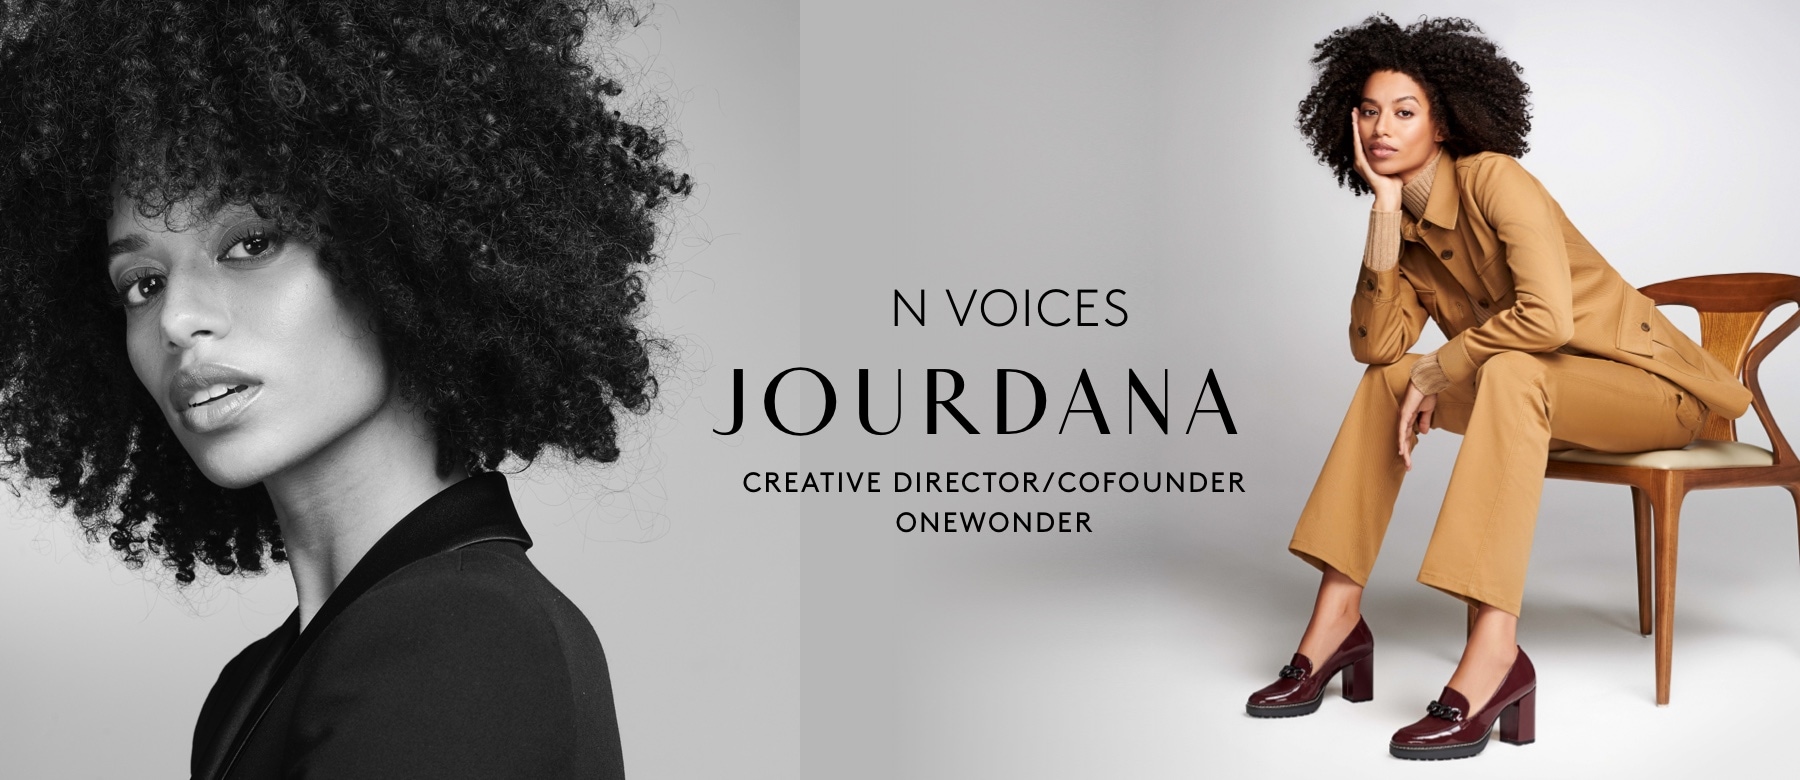 N Voices JOurdana